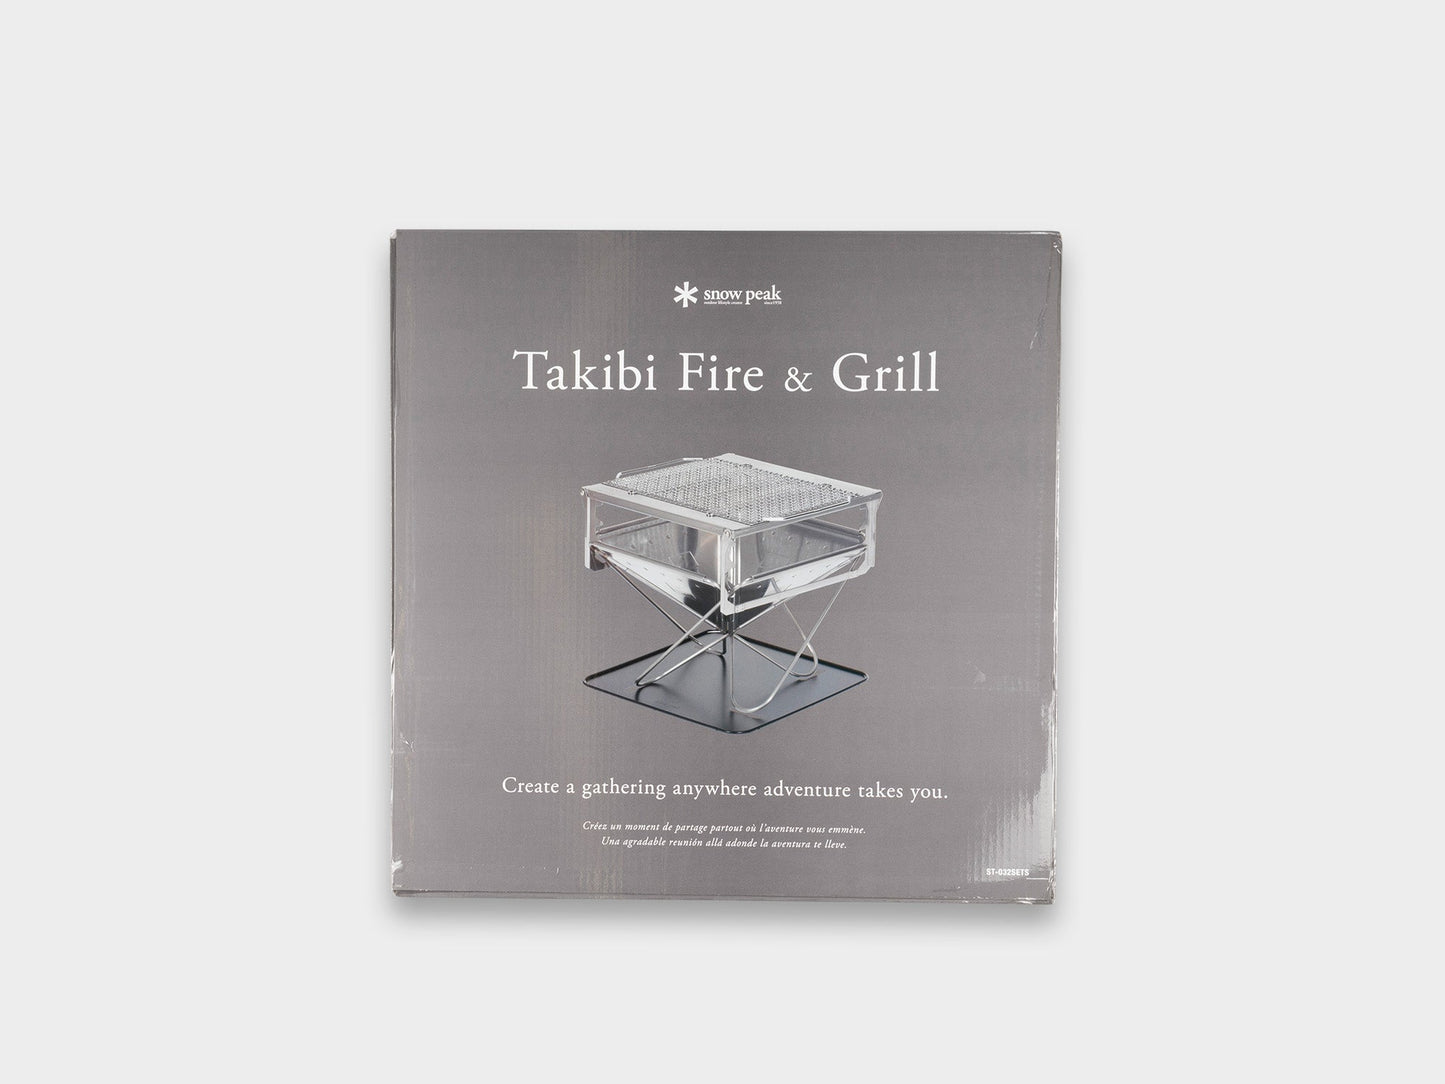 Snow Peak Takibi Fire & Grill